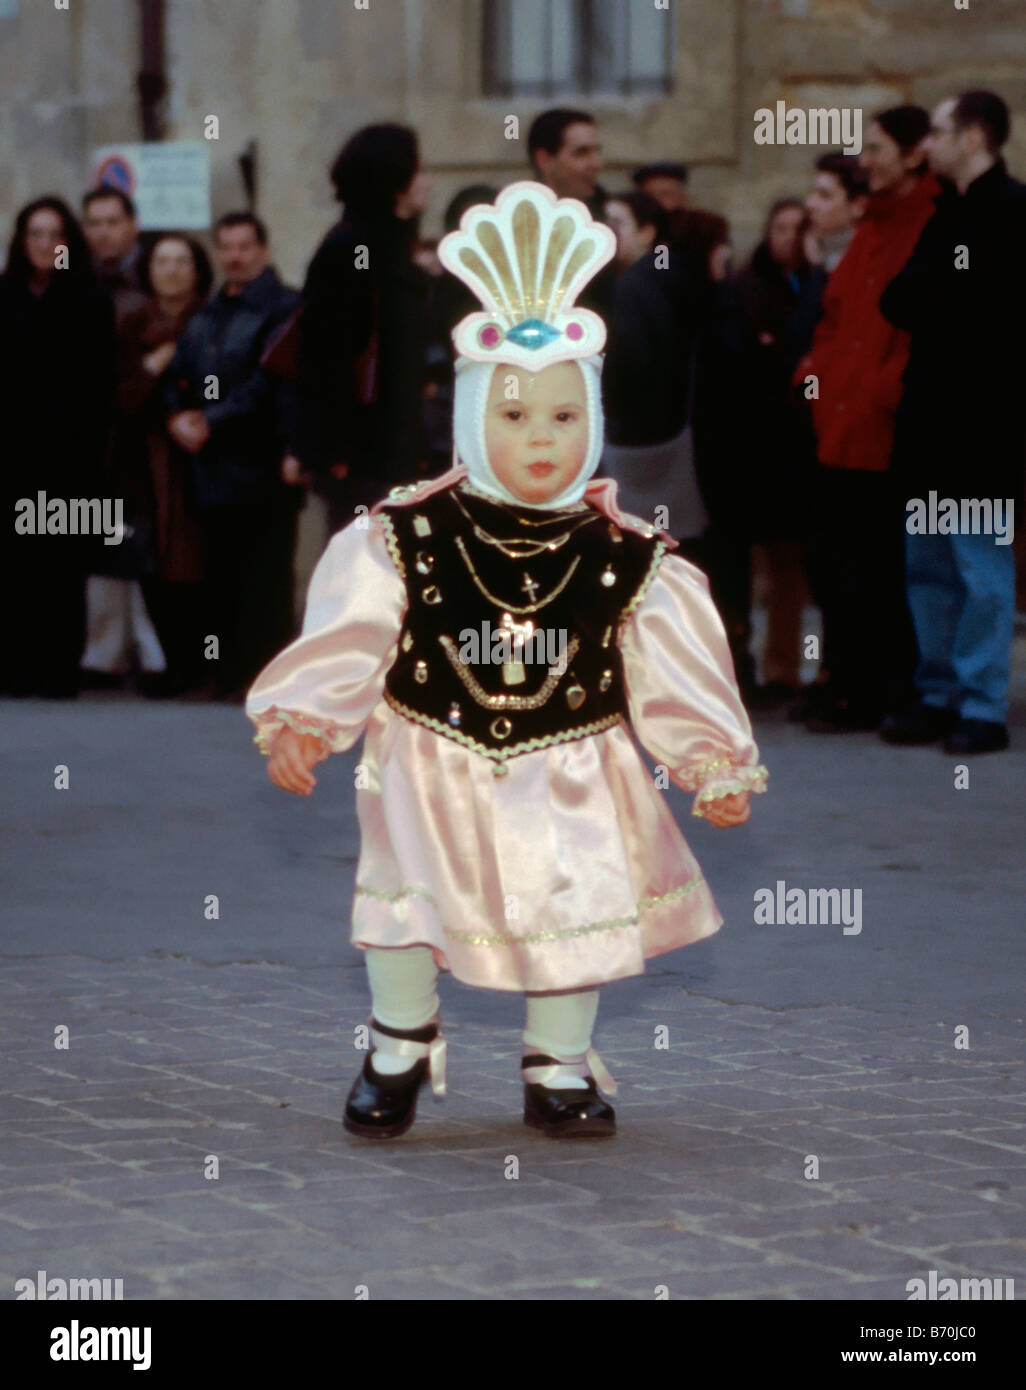 Petit enfant habillé en ange à Settimana Santa Semaine Sainte procession le dimanche des Rameaux nuit à Enna Sicile Italie Banque D'Images